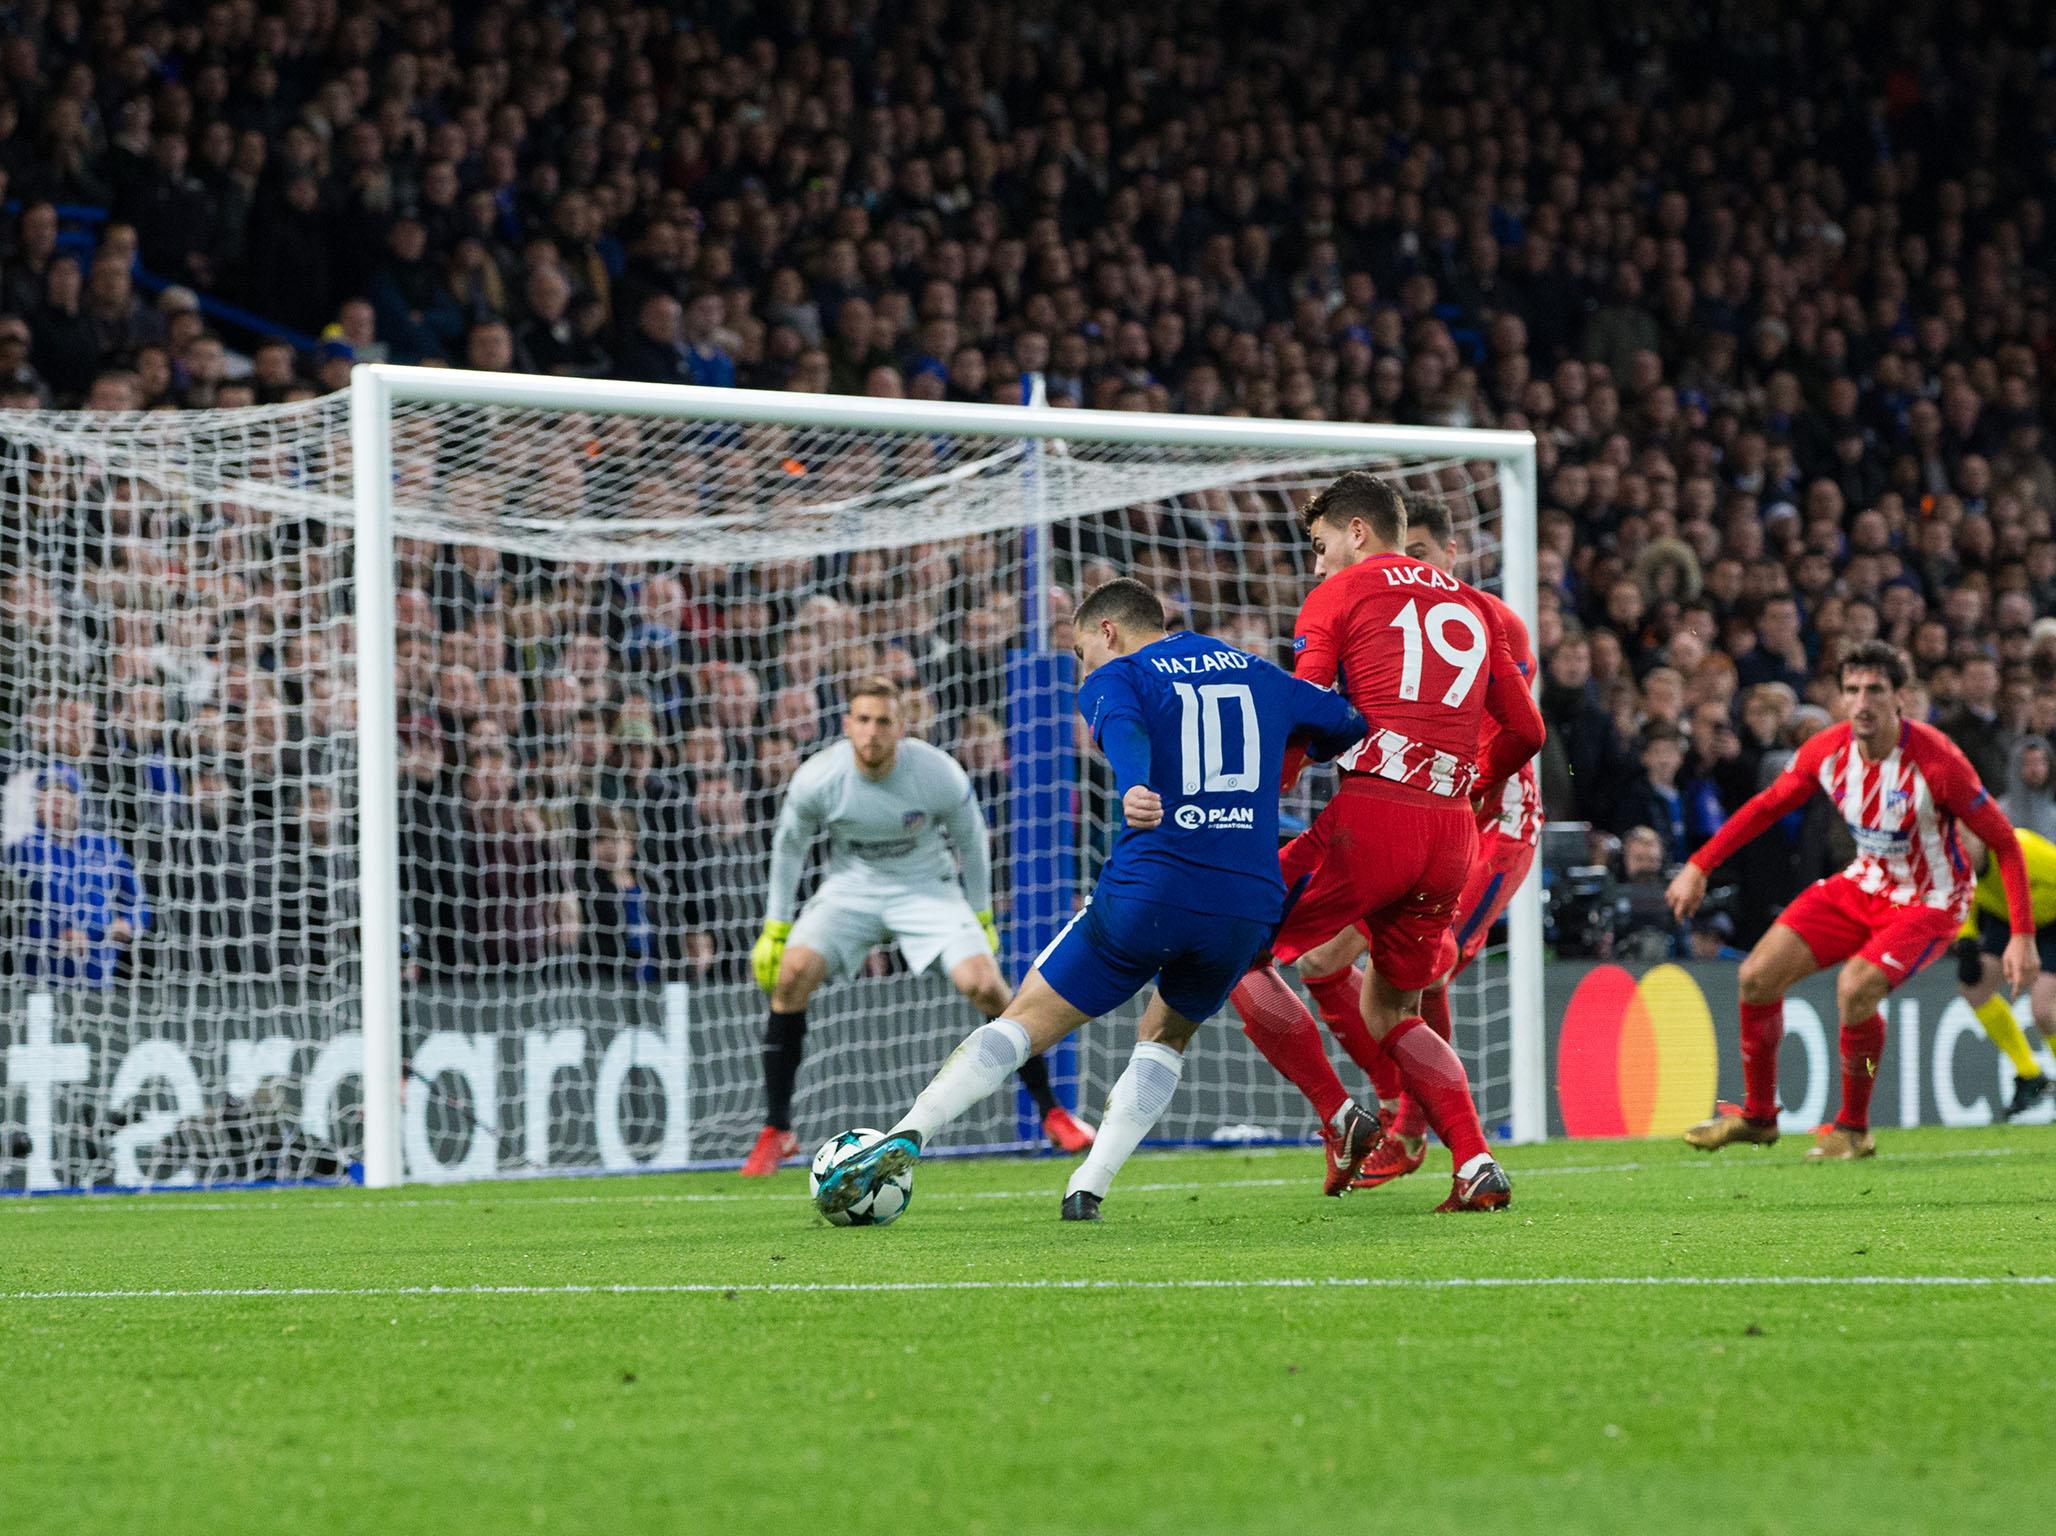 Eden Hazard's shot is deflected to pull Chelsea level